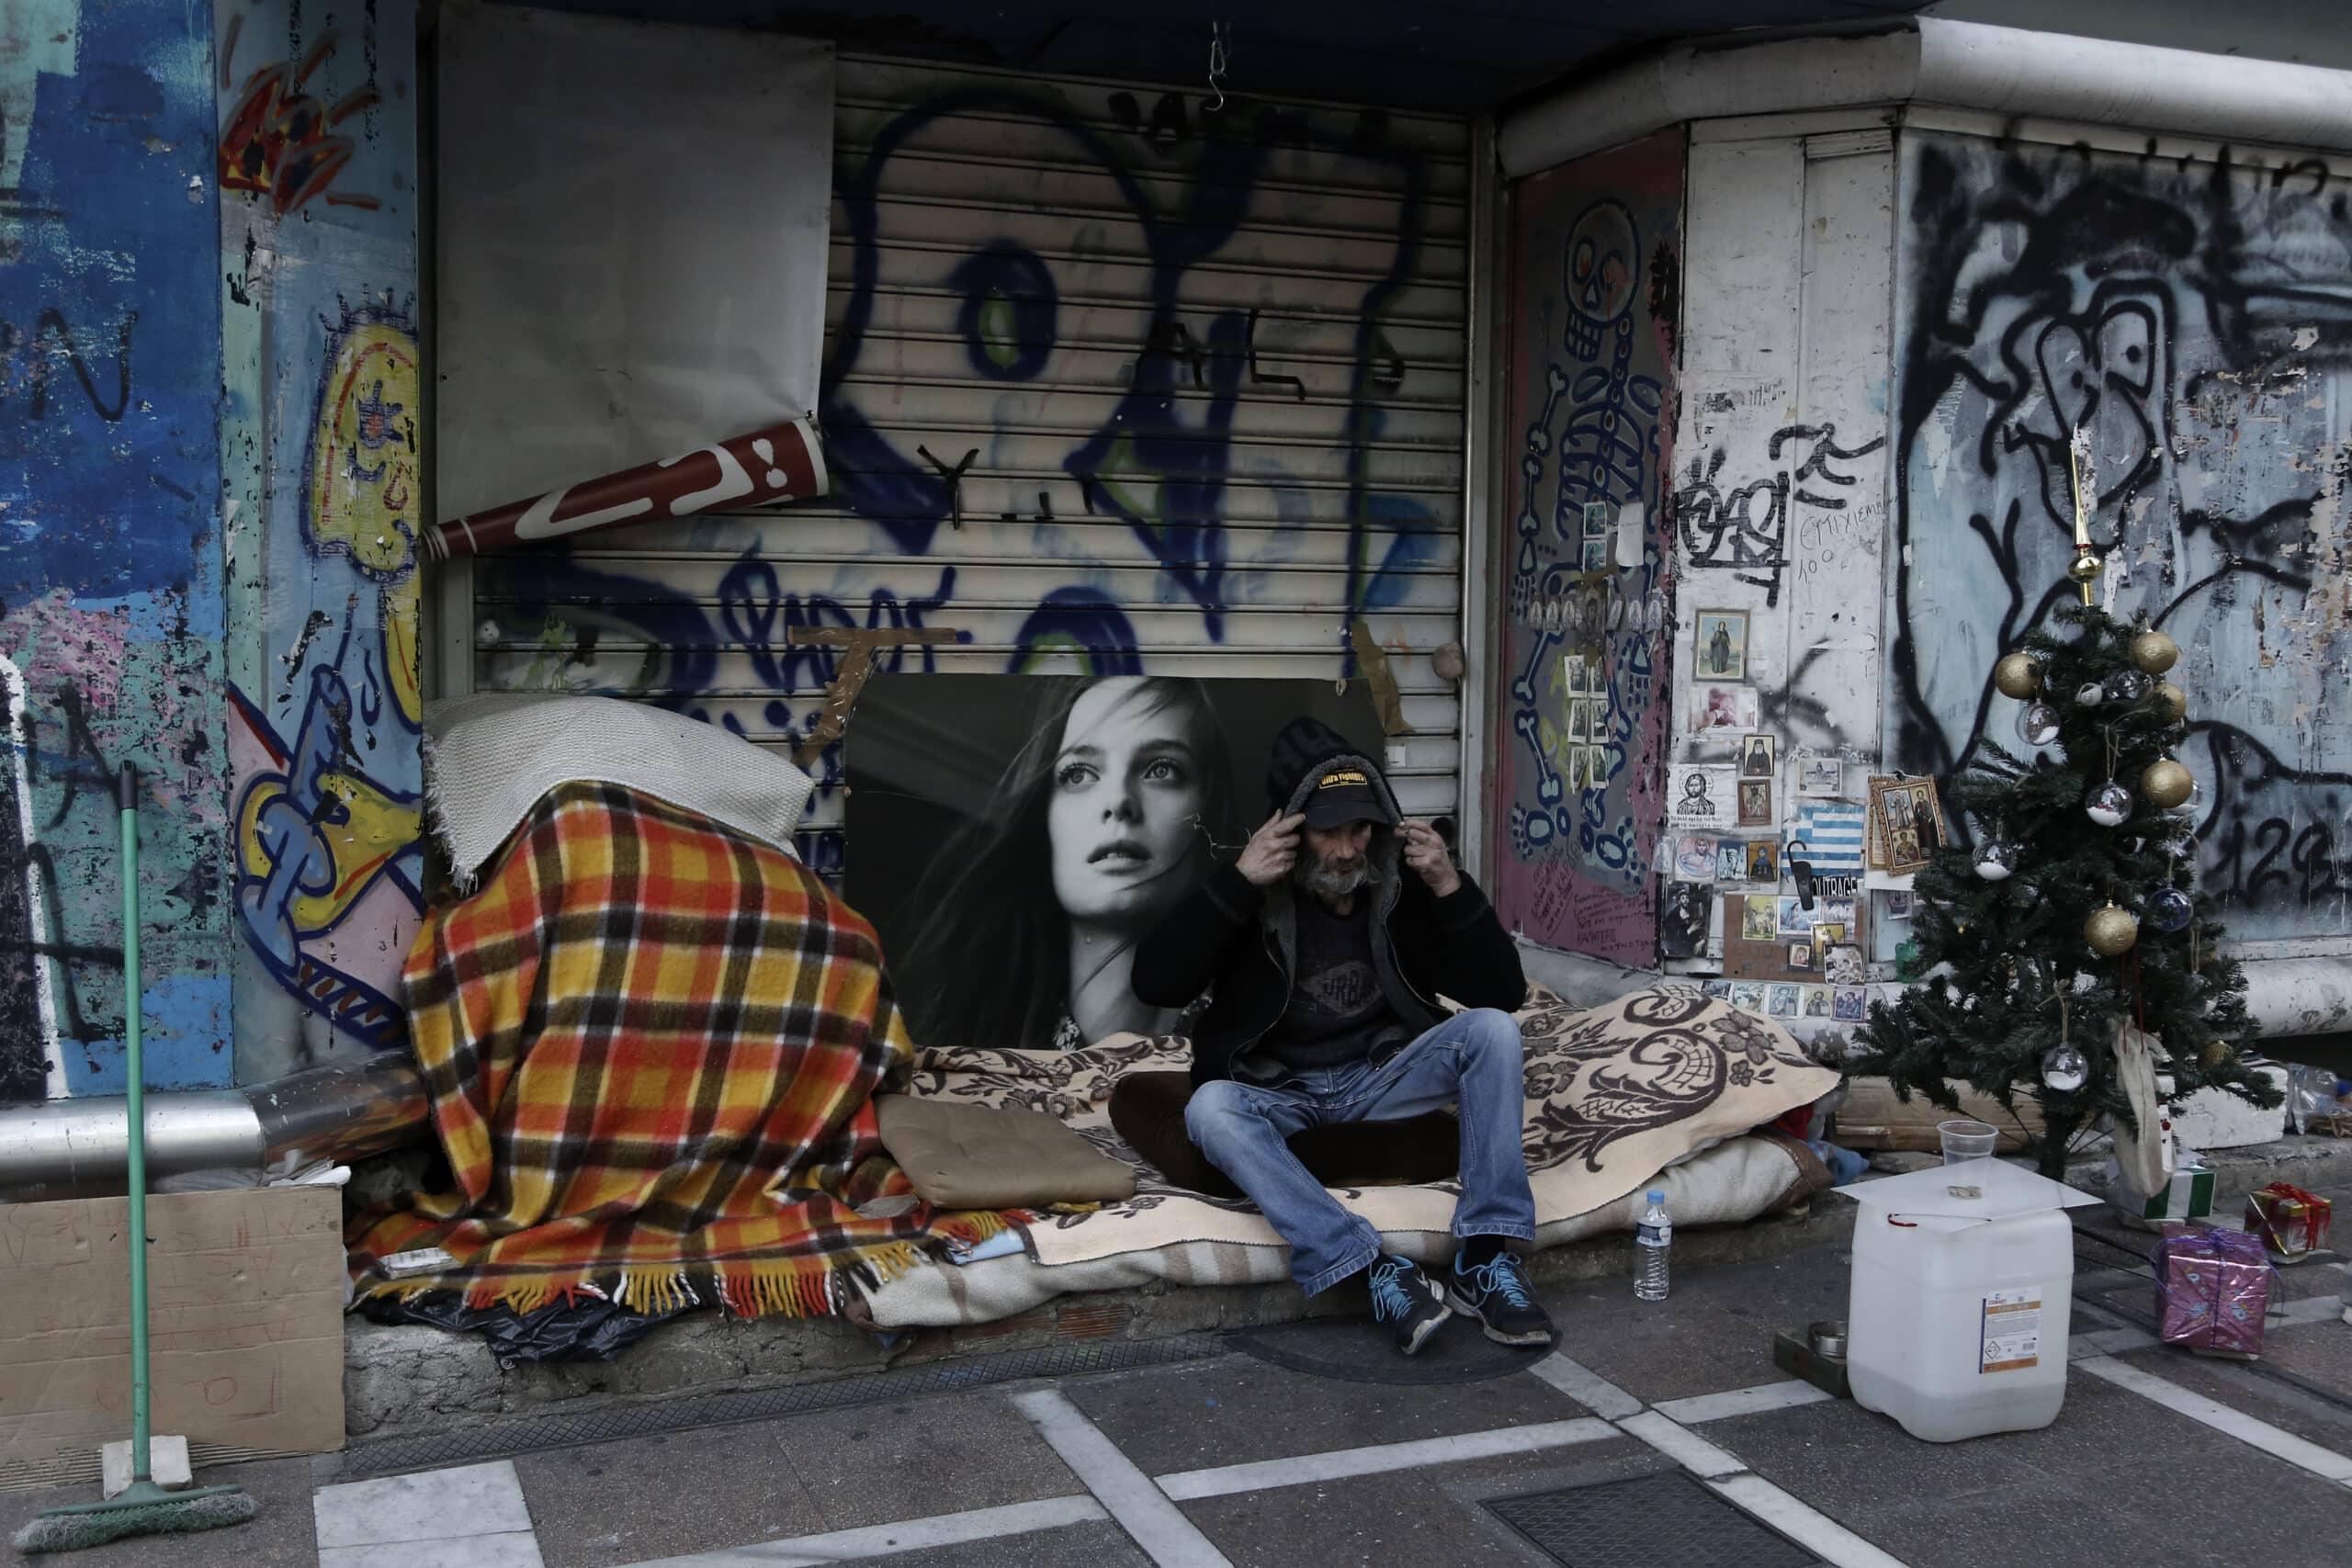 Ένας άστεγος άντρας φτιάχνει την κουκούλα από το πανωφόρι του, στο κέντρο της Αθήνας, Κυριακή 13 Δεκεμβρίου 2015. ΑΠΕ-ΜΠΕ/ΑΠΕ-ΜΠΕ/ΓΙΑΝΝΗΣ ΚΟΛΕΣΙΔΗΣ